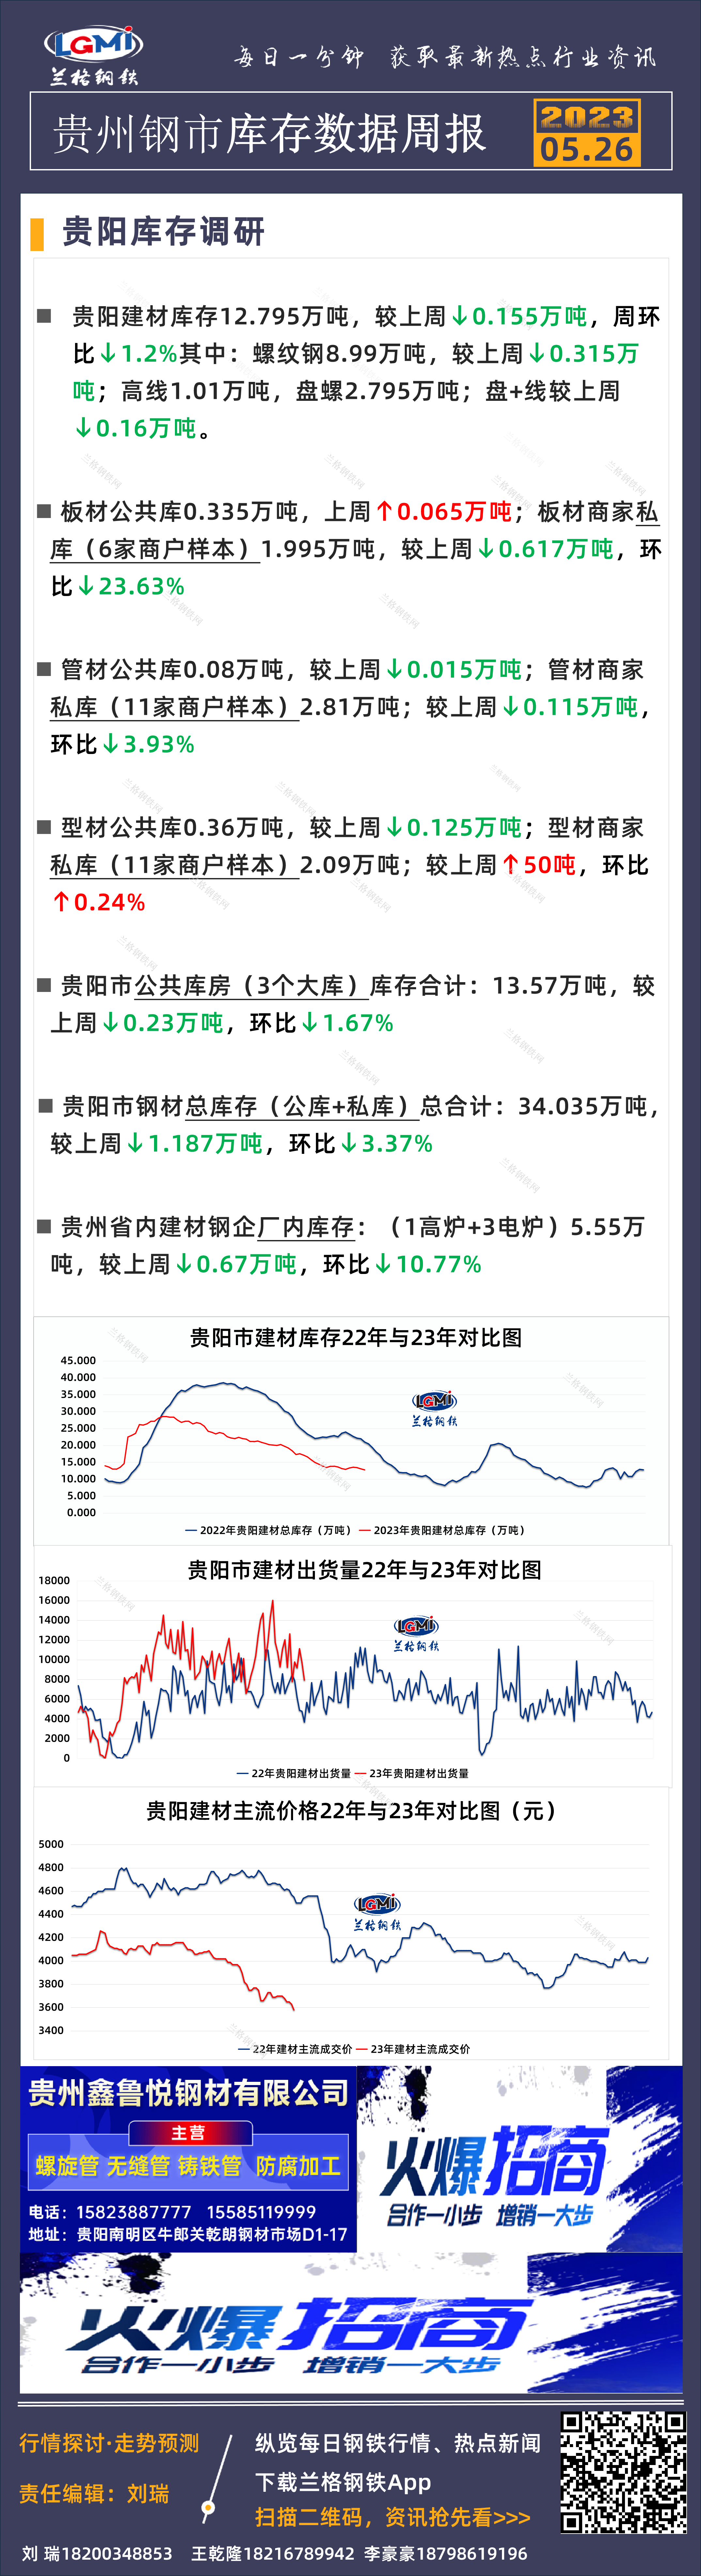 贵州钢市库存数据周报5.26